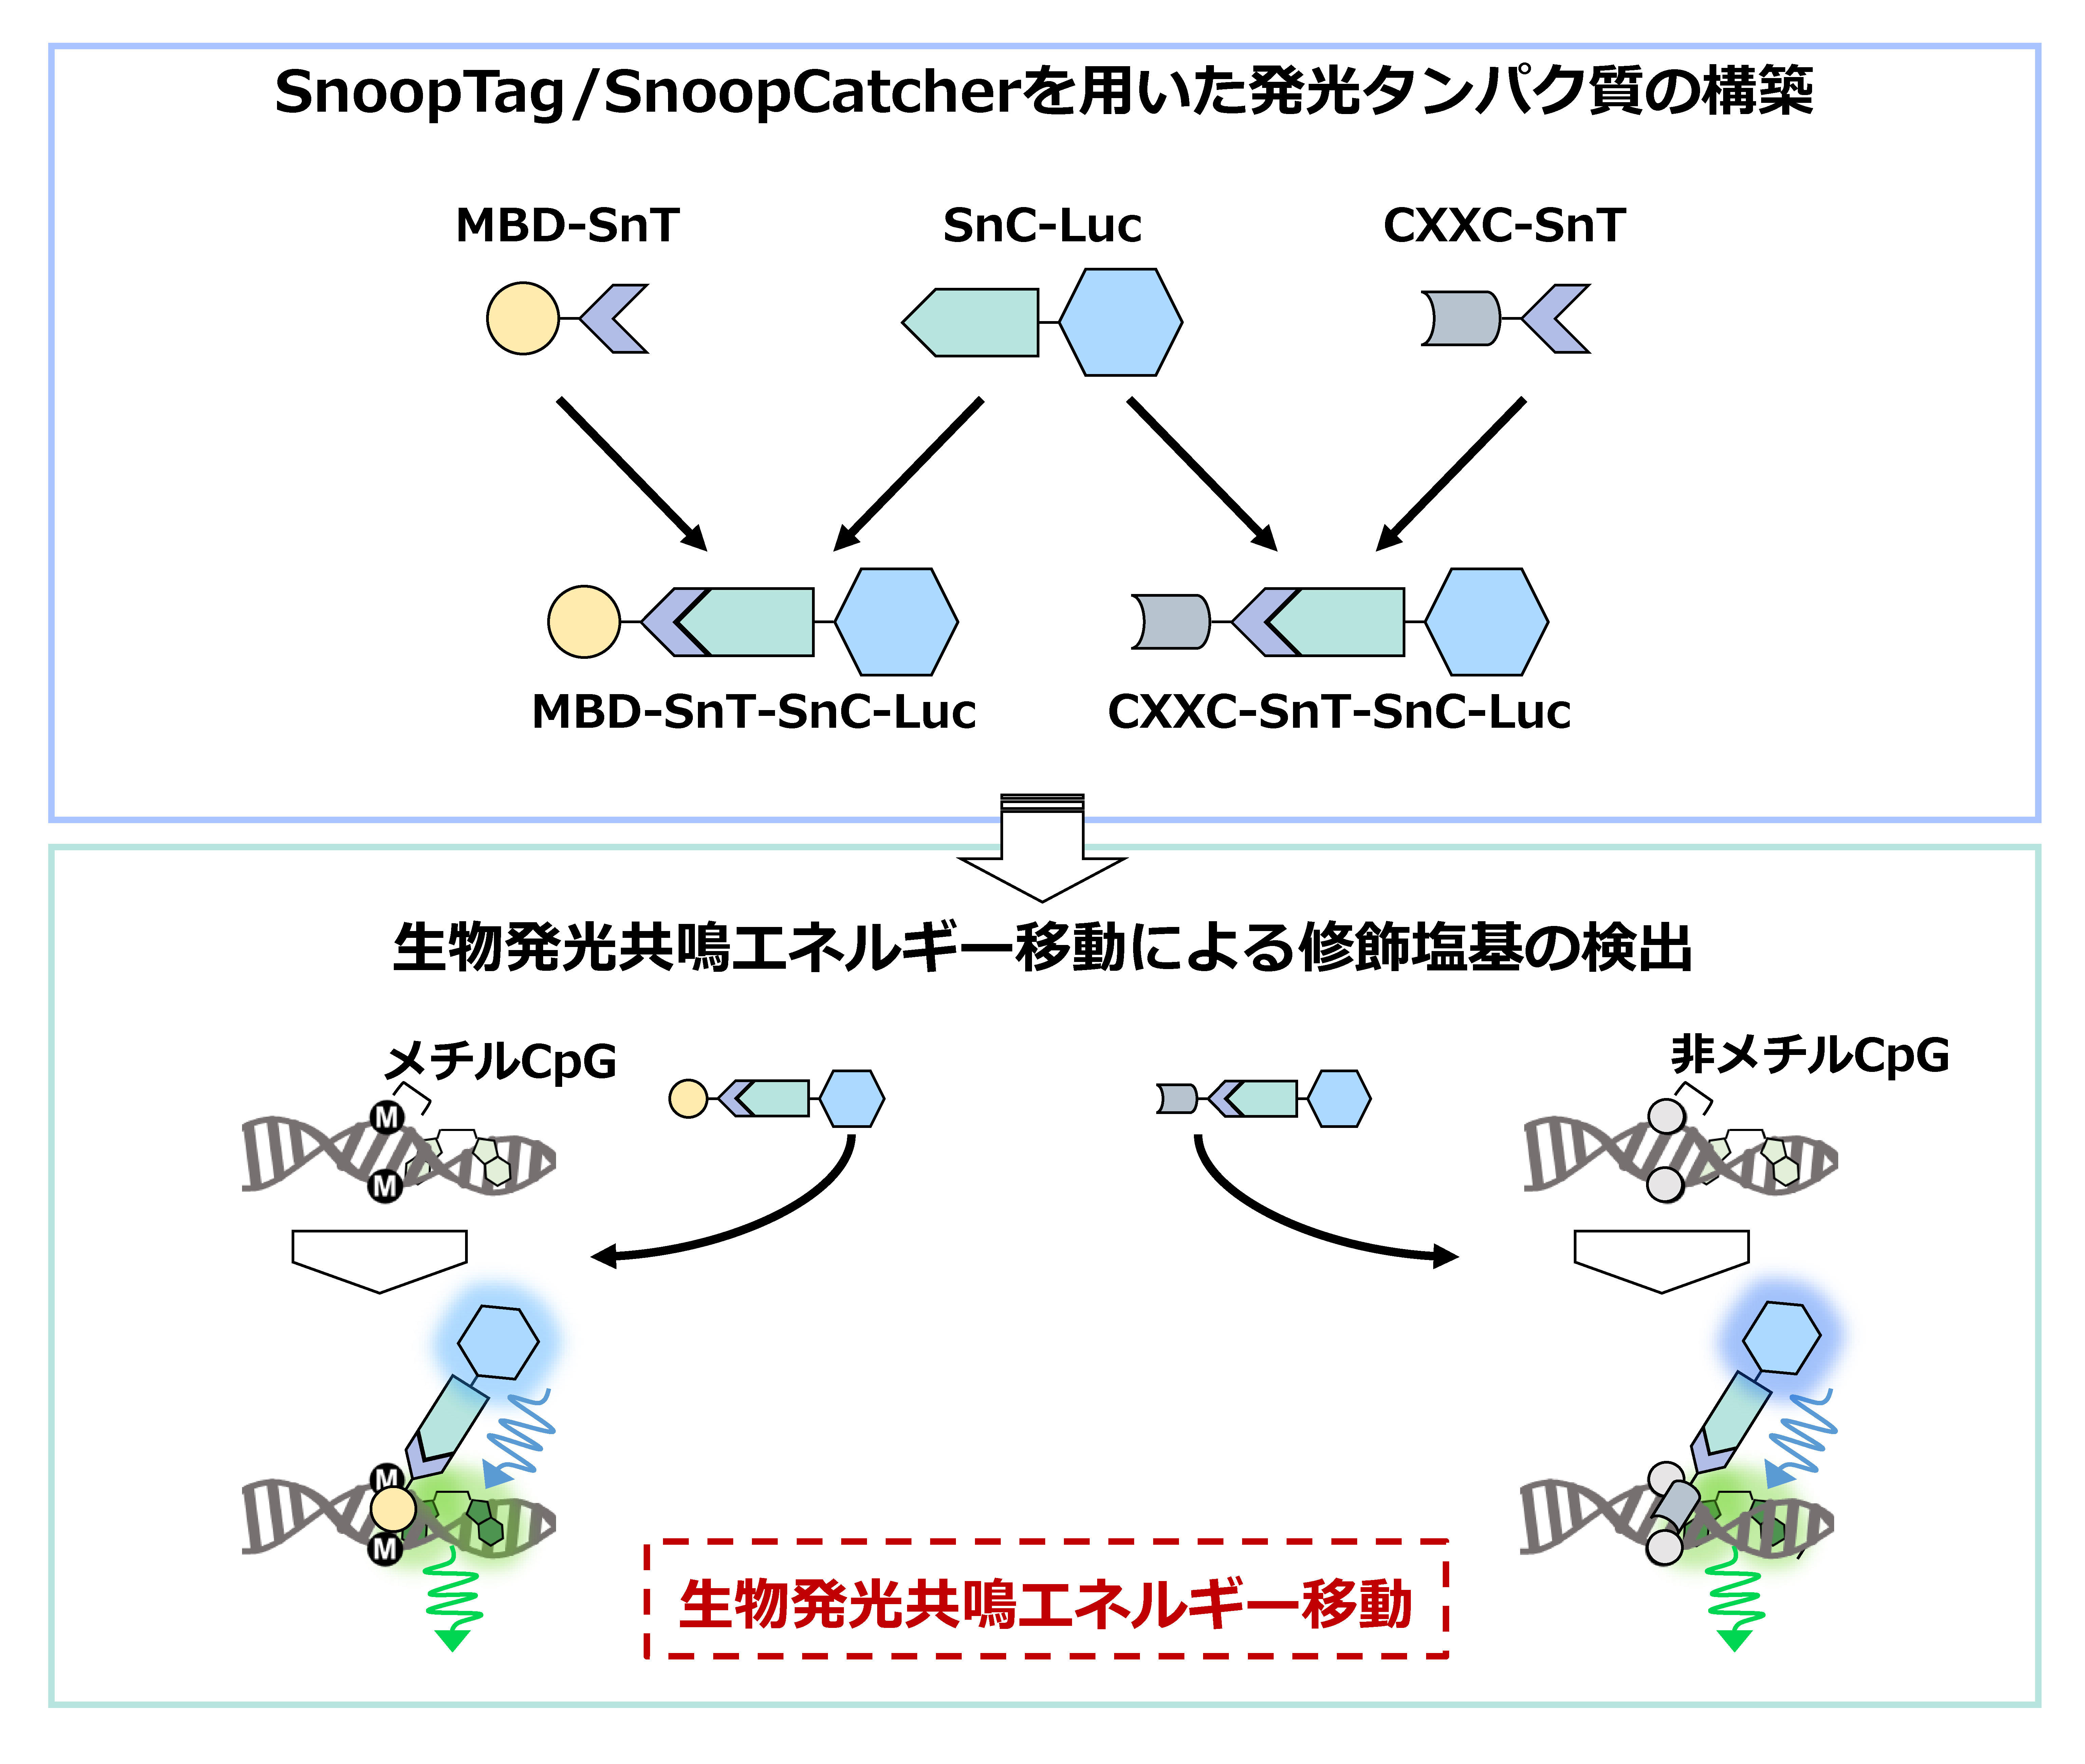 ゲノムDNA中の各種修飾塩基を測定する発光タンパク質構築法を開発～がんなどの簡易診断への応用に期待～東京工科大学応用生物学部